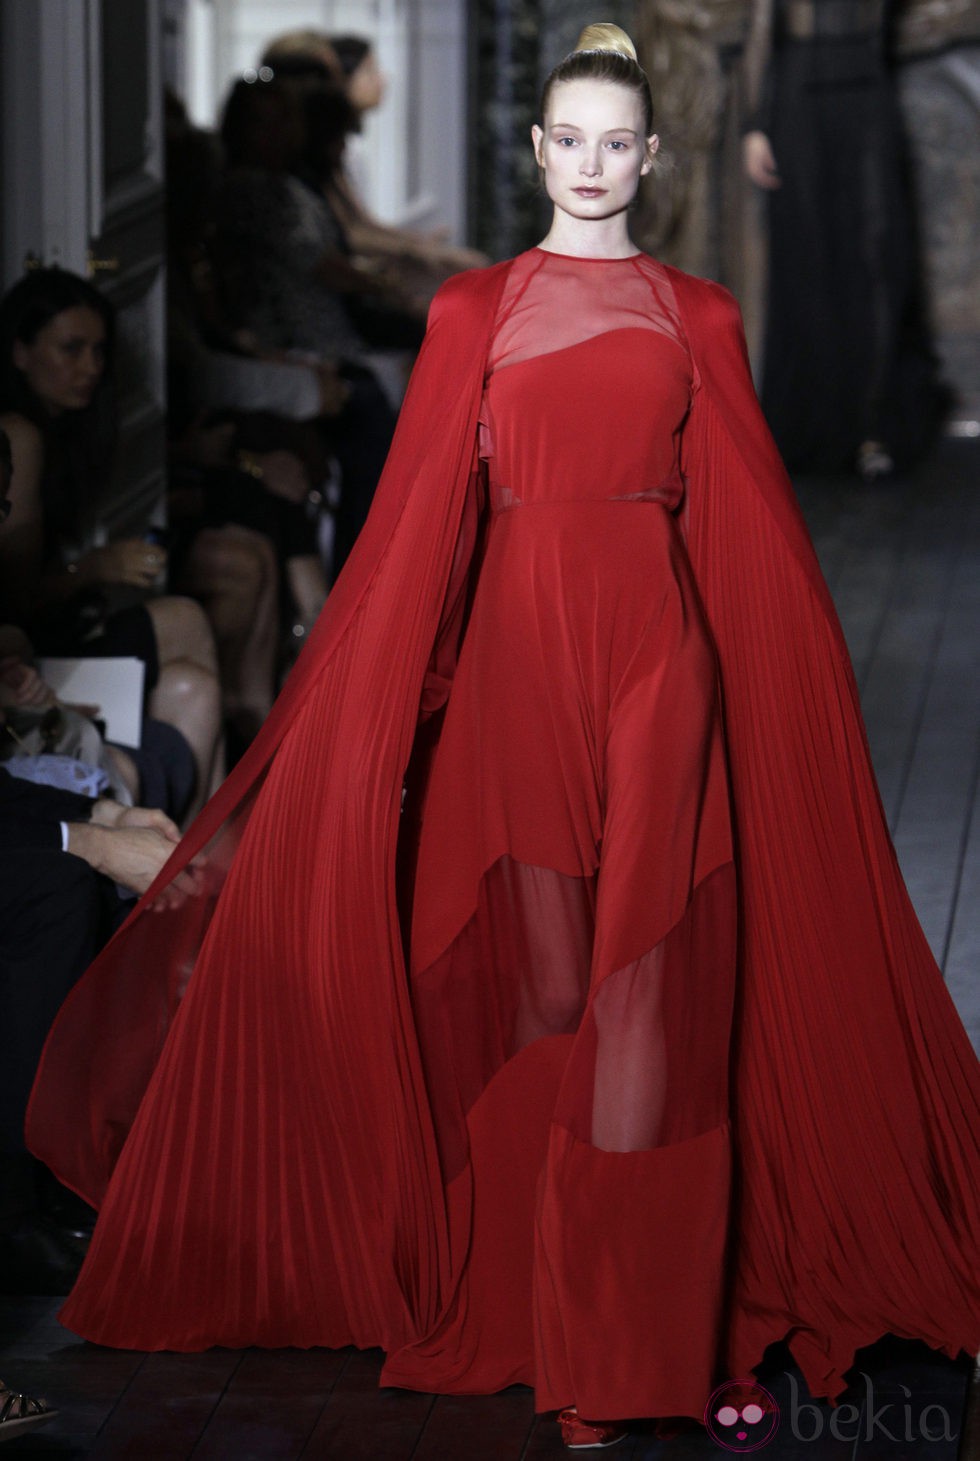 Vestido rojo con transparencias de Valentino otoño/invierno 2012/2013 - Bekia Moda